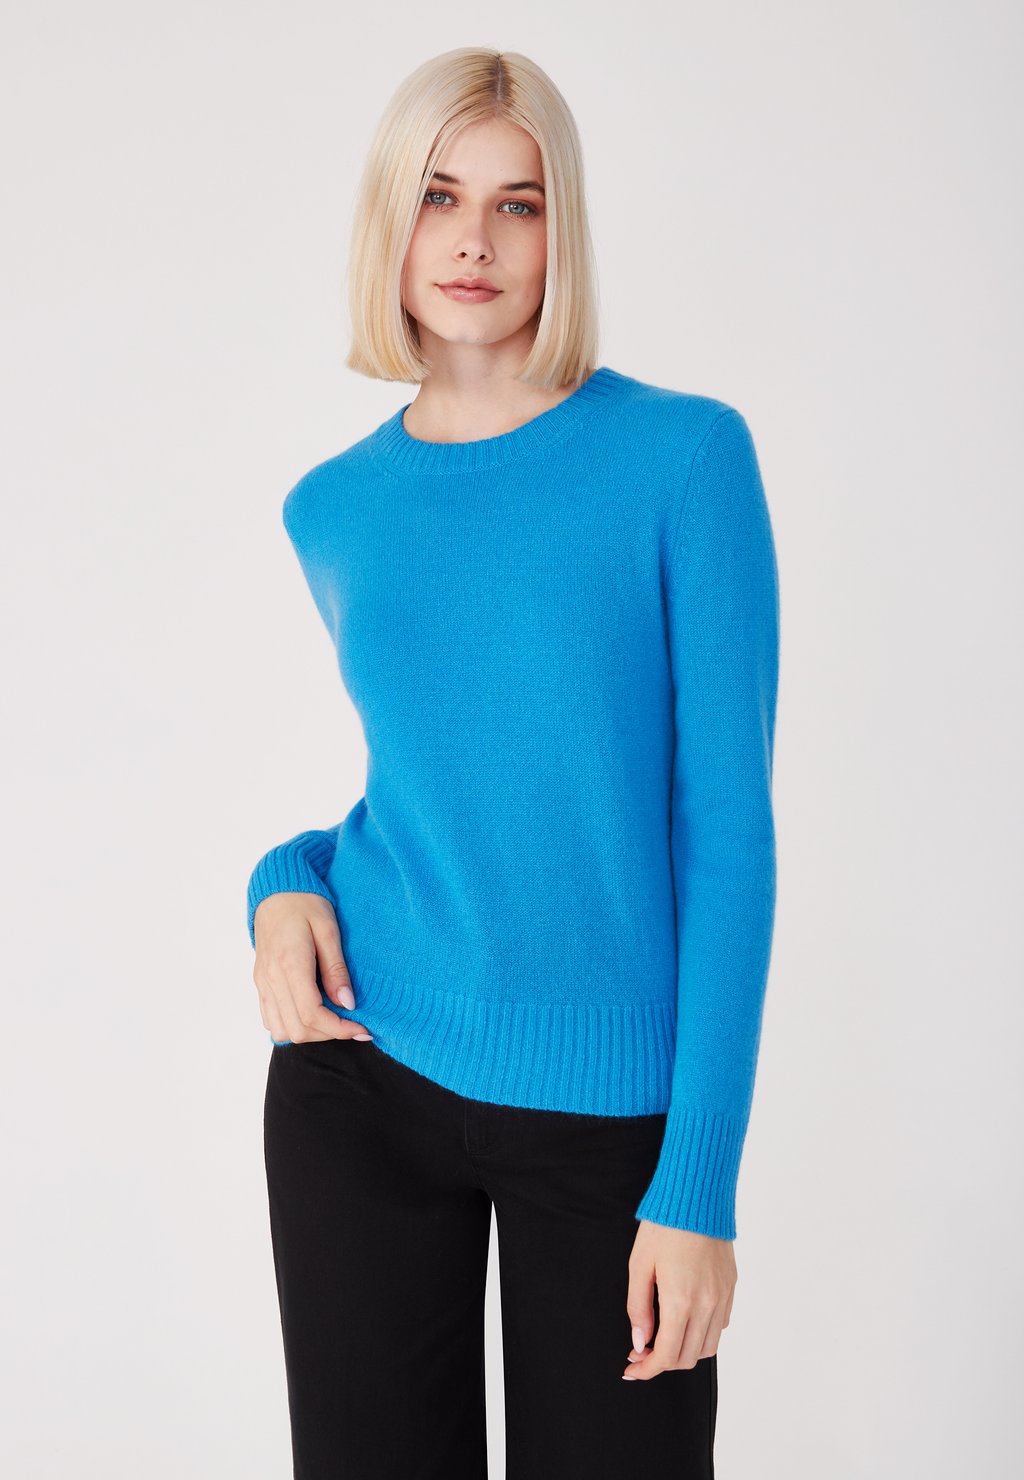 вязаный свитер v neck style republic цвет fancy blue Вязаный свитер Style Republic, цвет fancy blue